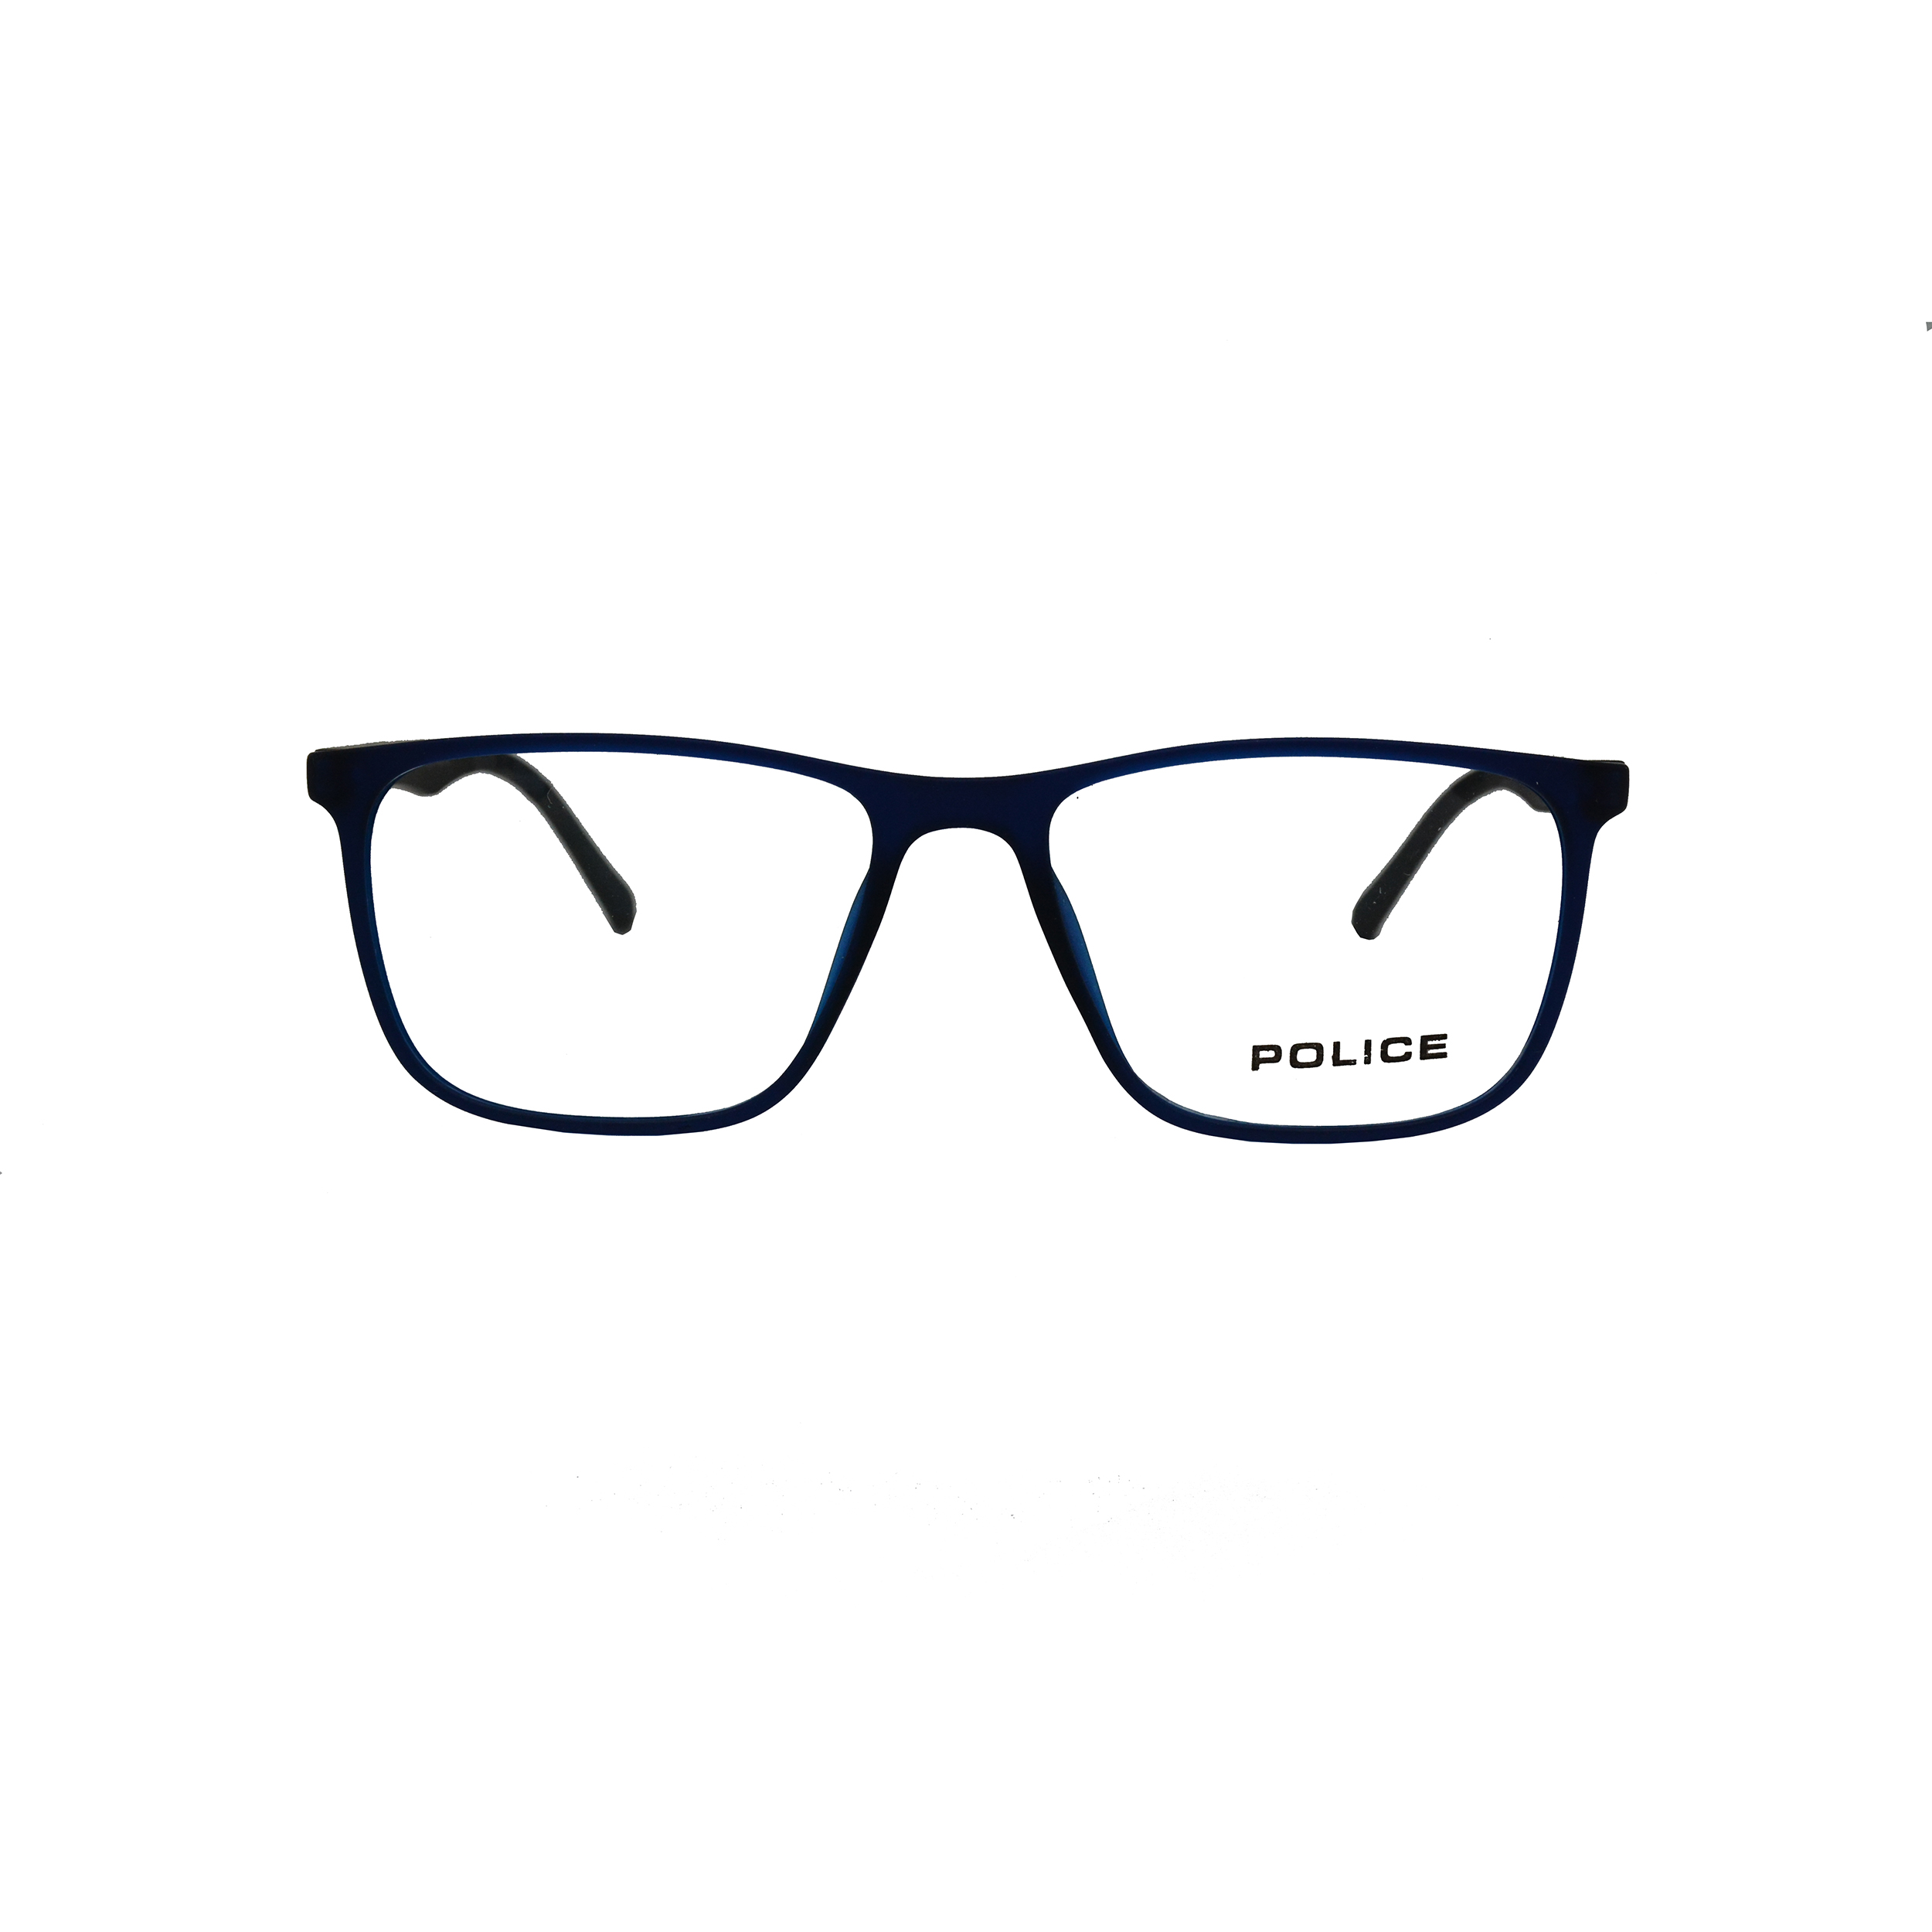 فریم عینک طبی پلیس مدل 2005 52161422